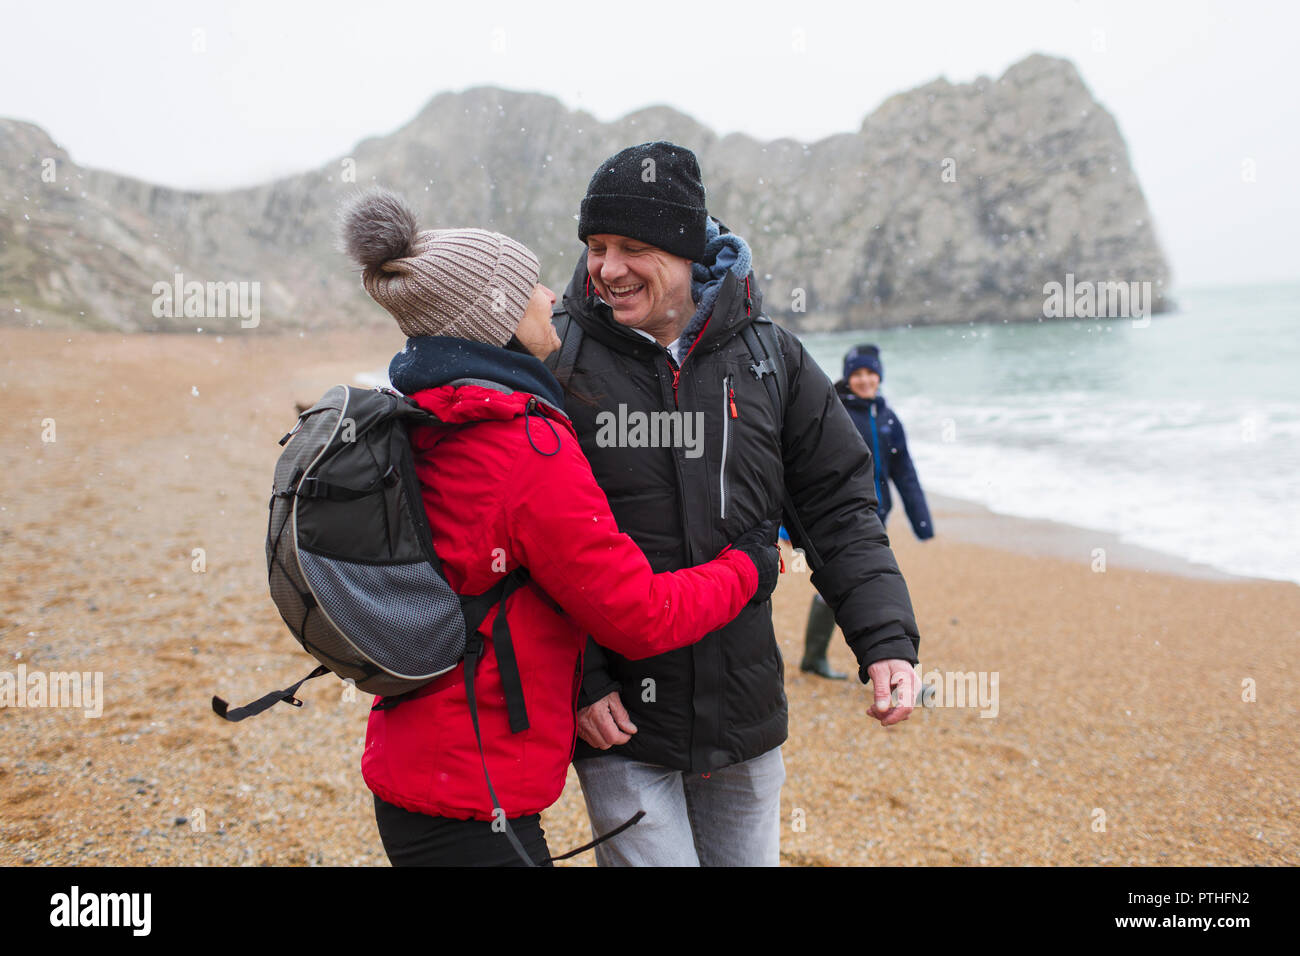 Affectueux, couple heureux dans des vêtements chauds d'hiver enneigés sur beach Banque D'Images